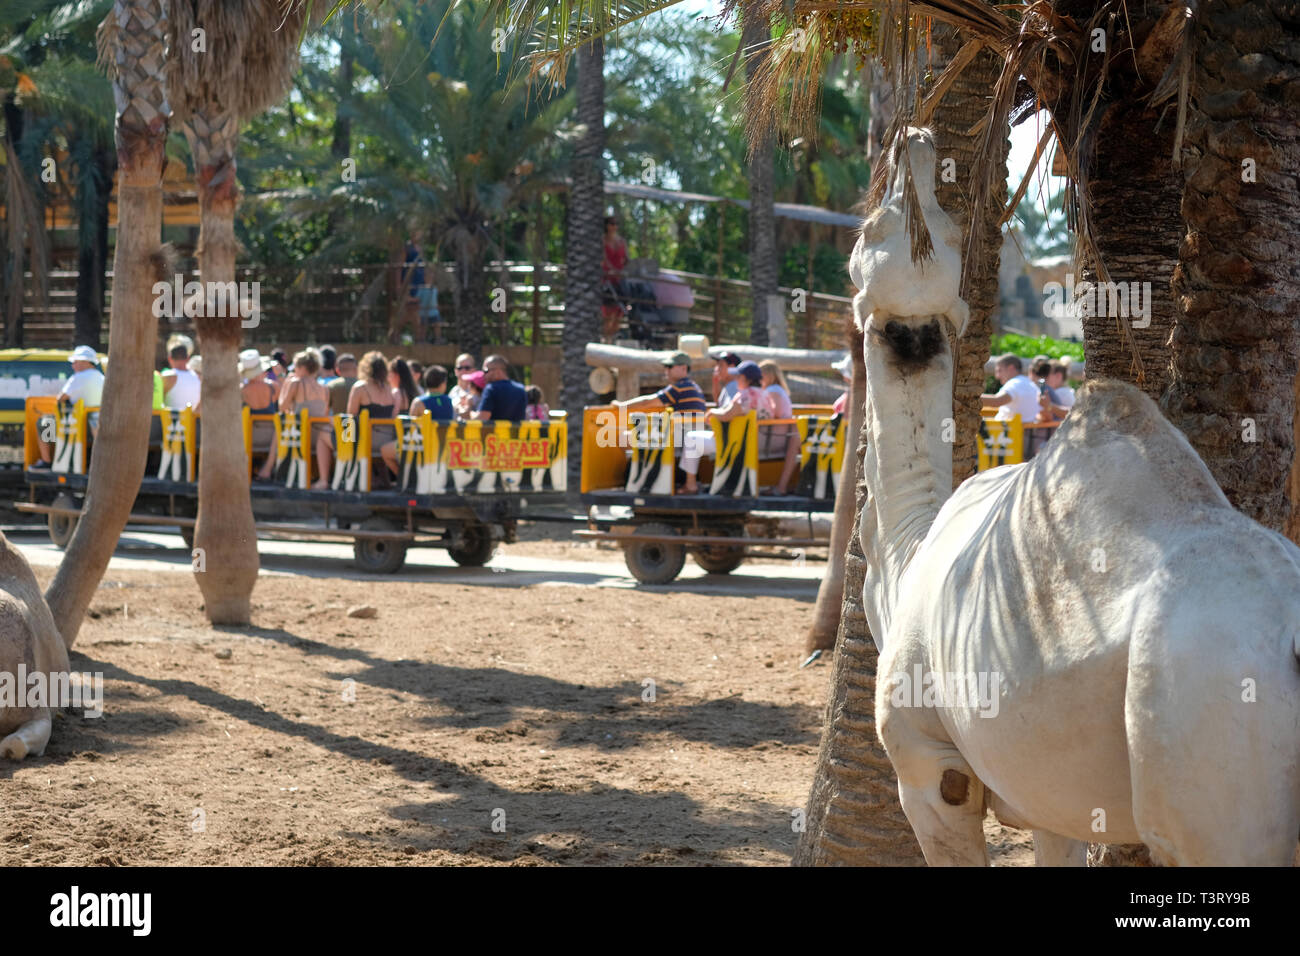 Elche, Espagne - 22 septembre 2019: Safari voiture remorque pleine de touristes des visites sur le zoo zone de parc, les personnes regardant des animaux de distance Banque D'Images